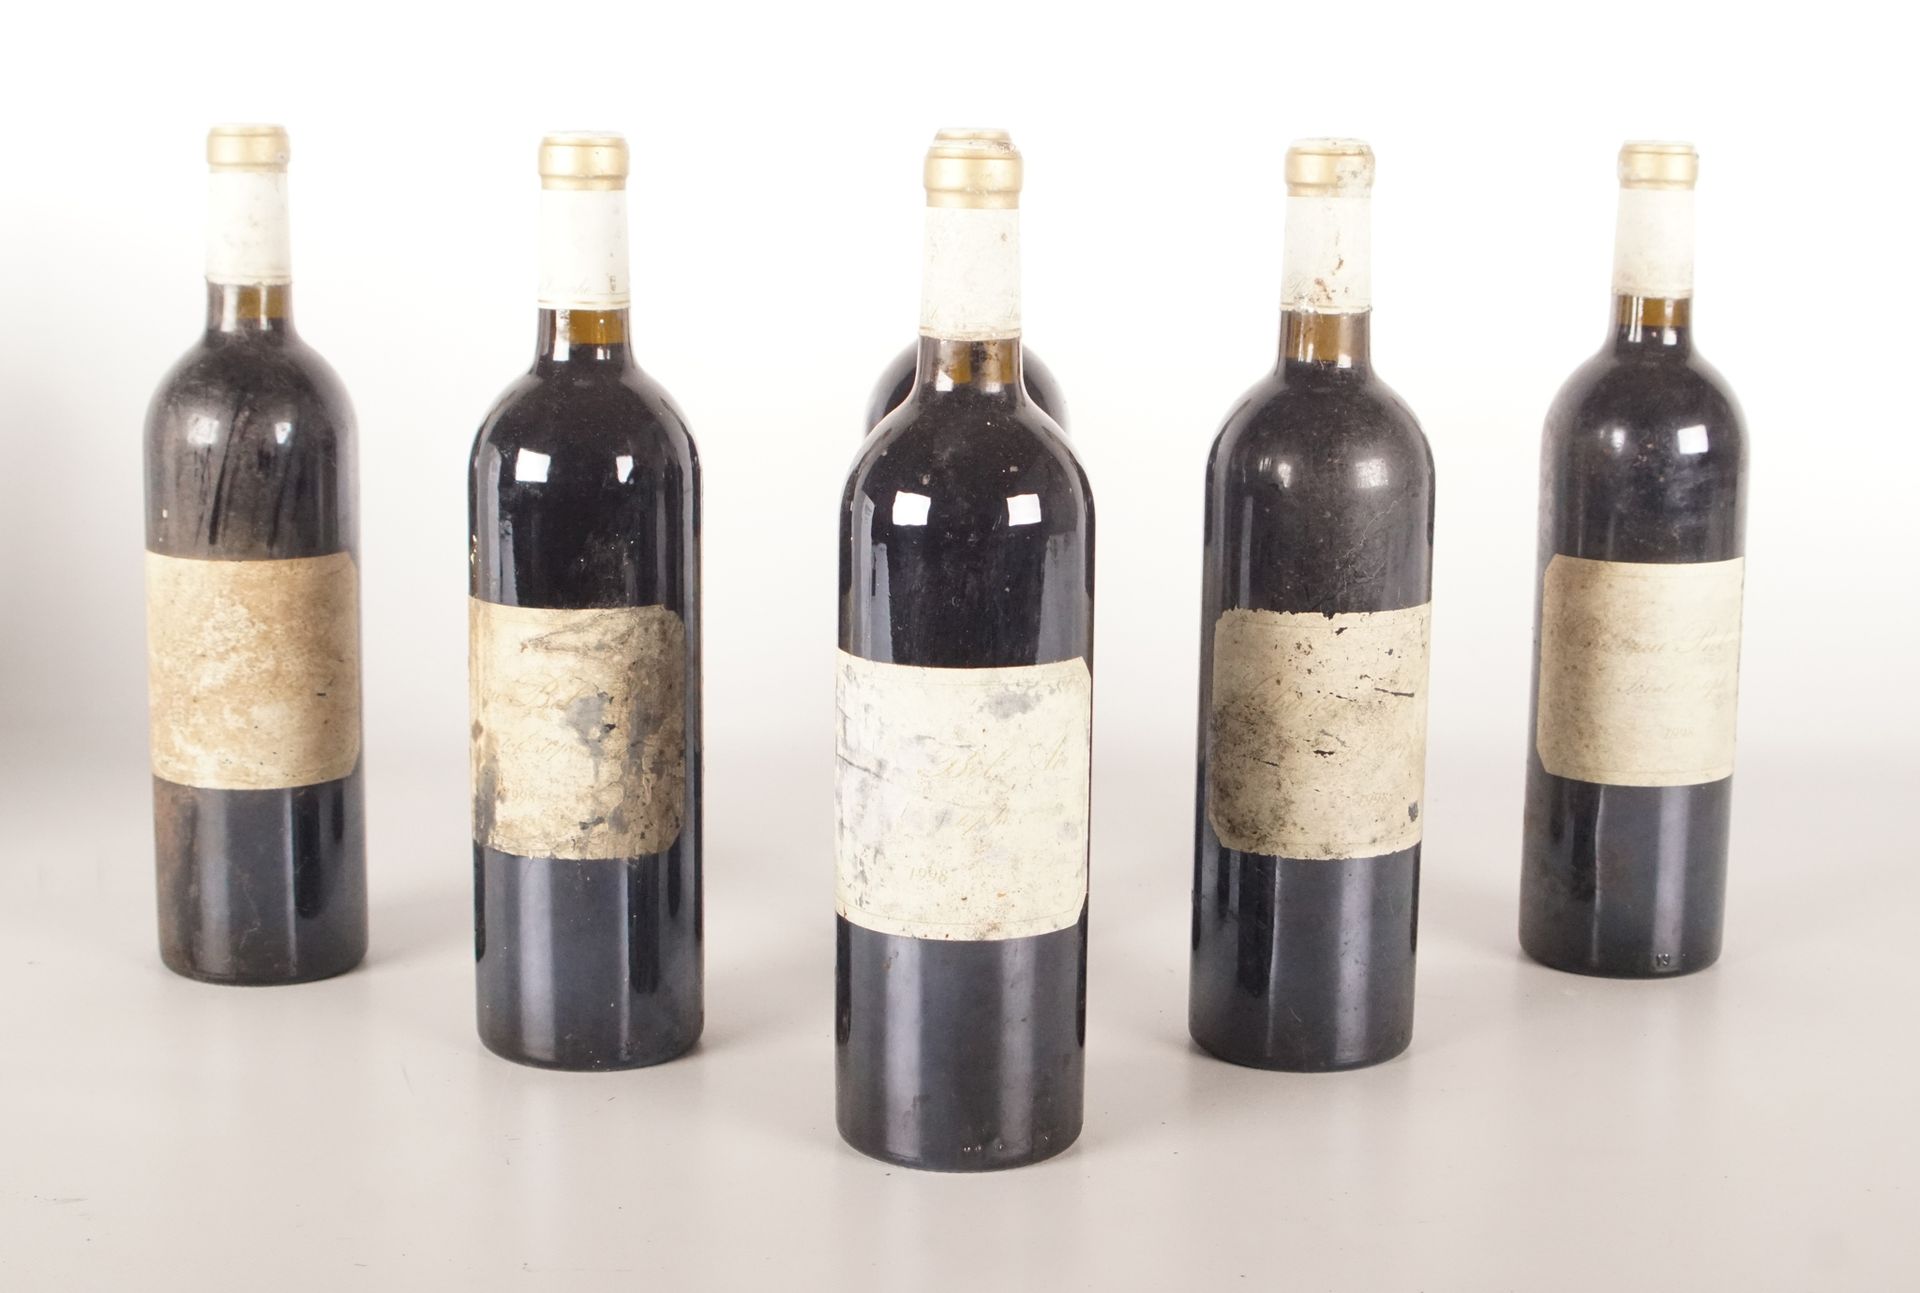 Vin - Saint-Estèphe - Bel Air - 1998 6 botellas - Buen nivel - Etiquetas casi il&hellip;